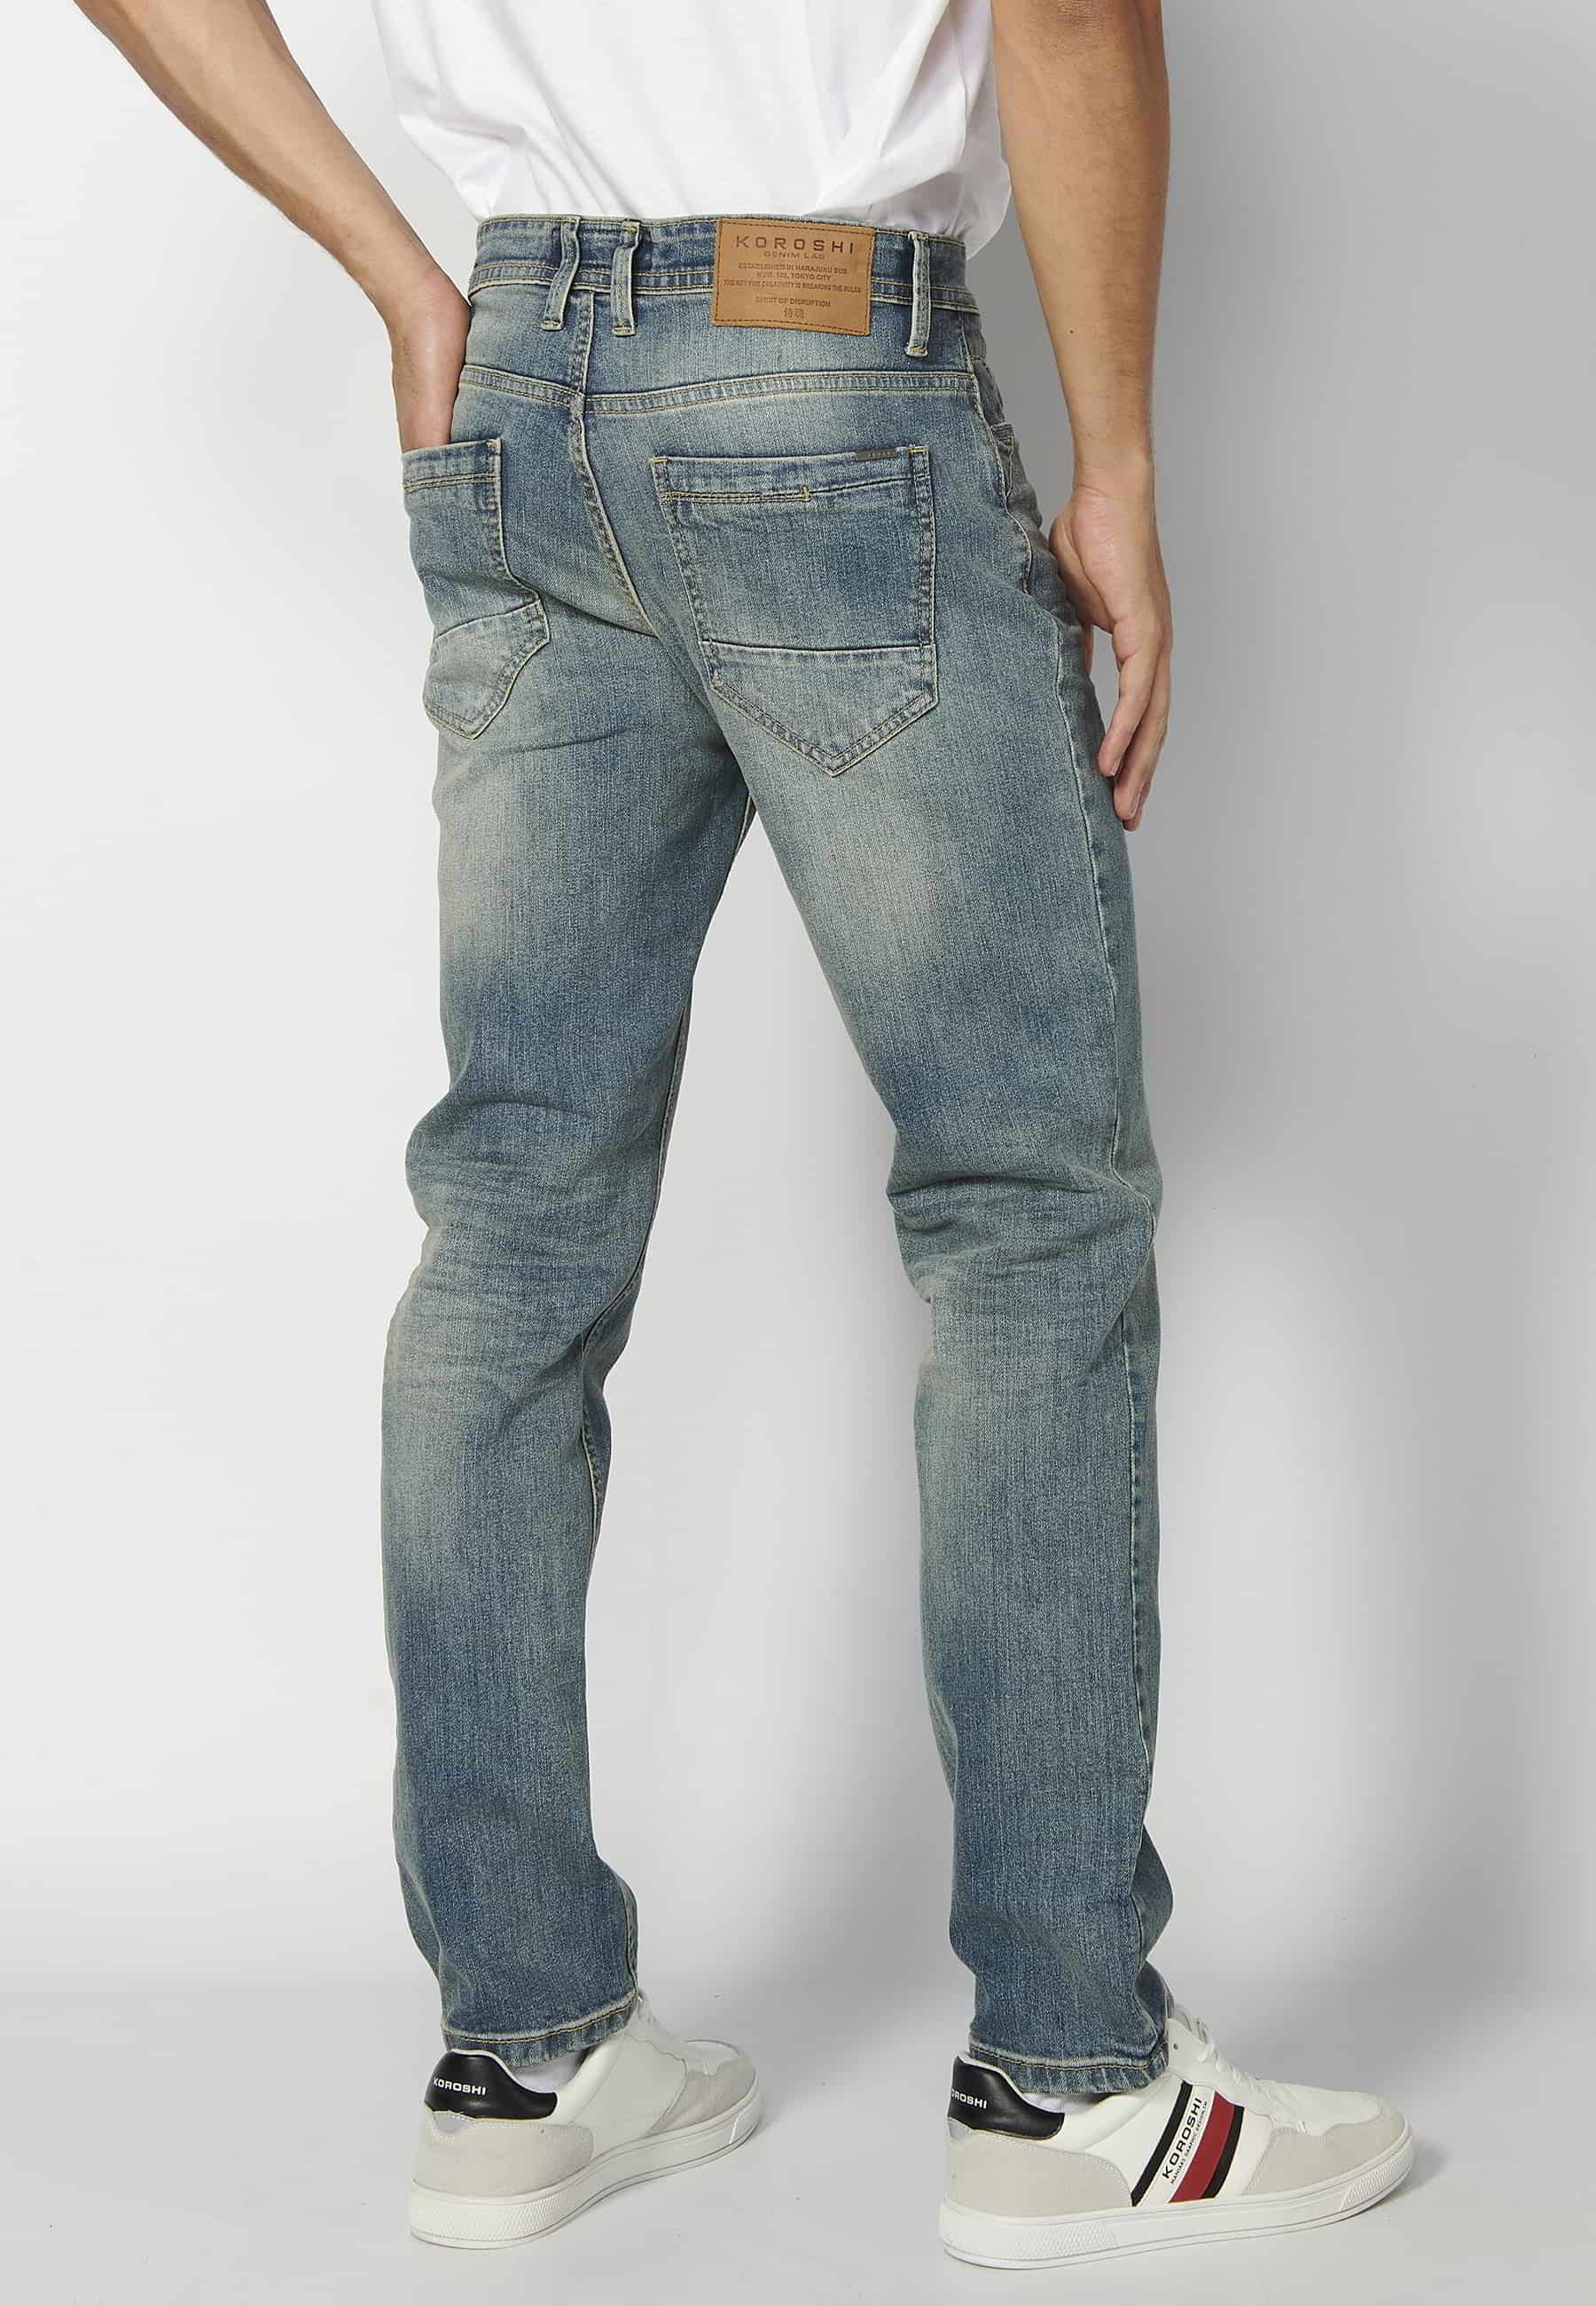 Pantalón largo super skinny, con cinco bolsillos, color gris desgastado para Hombre 2